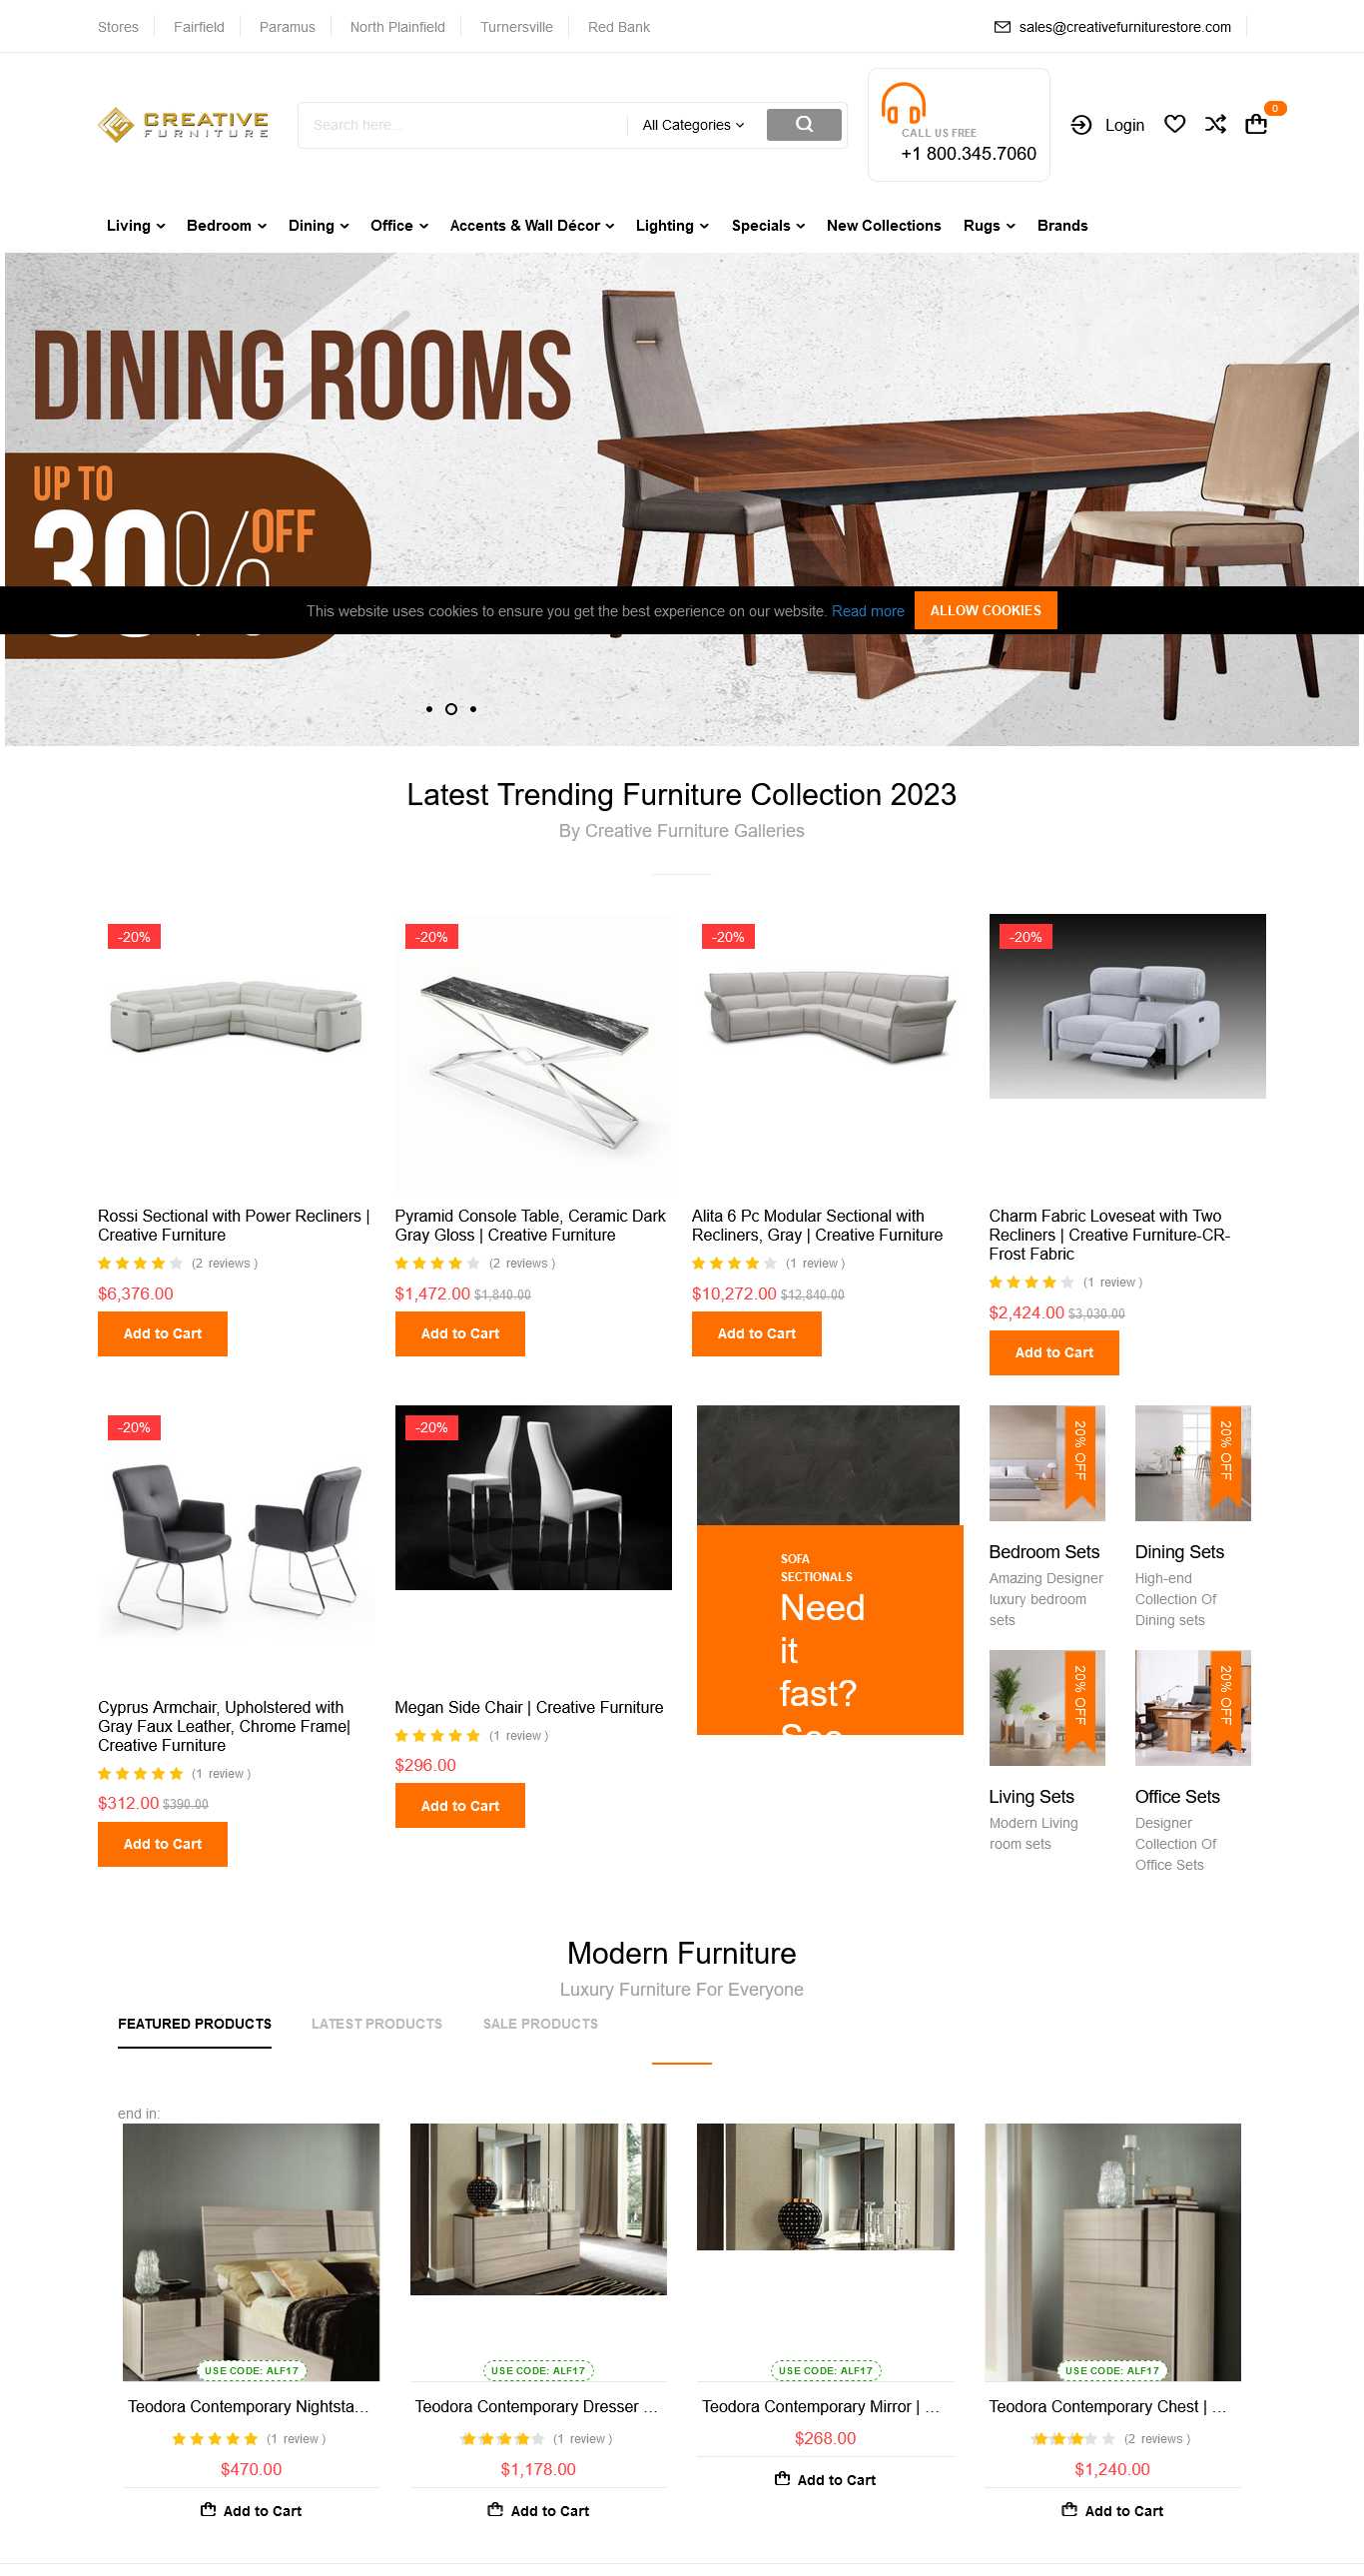 Creative Furniturestore